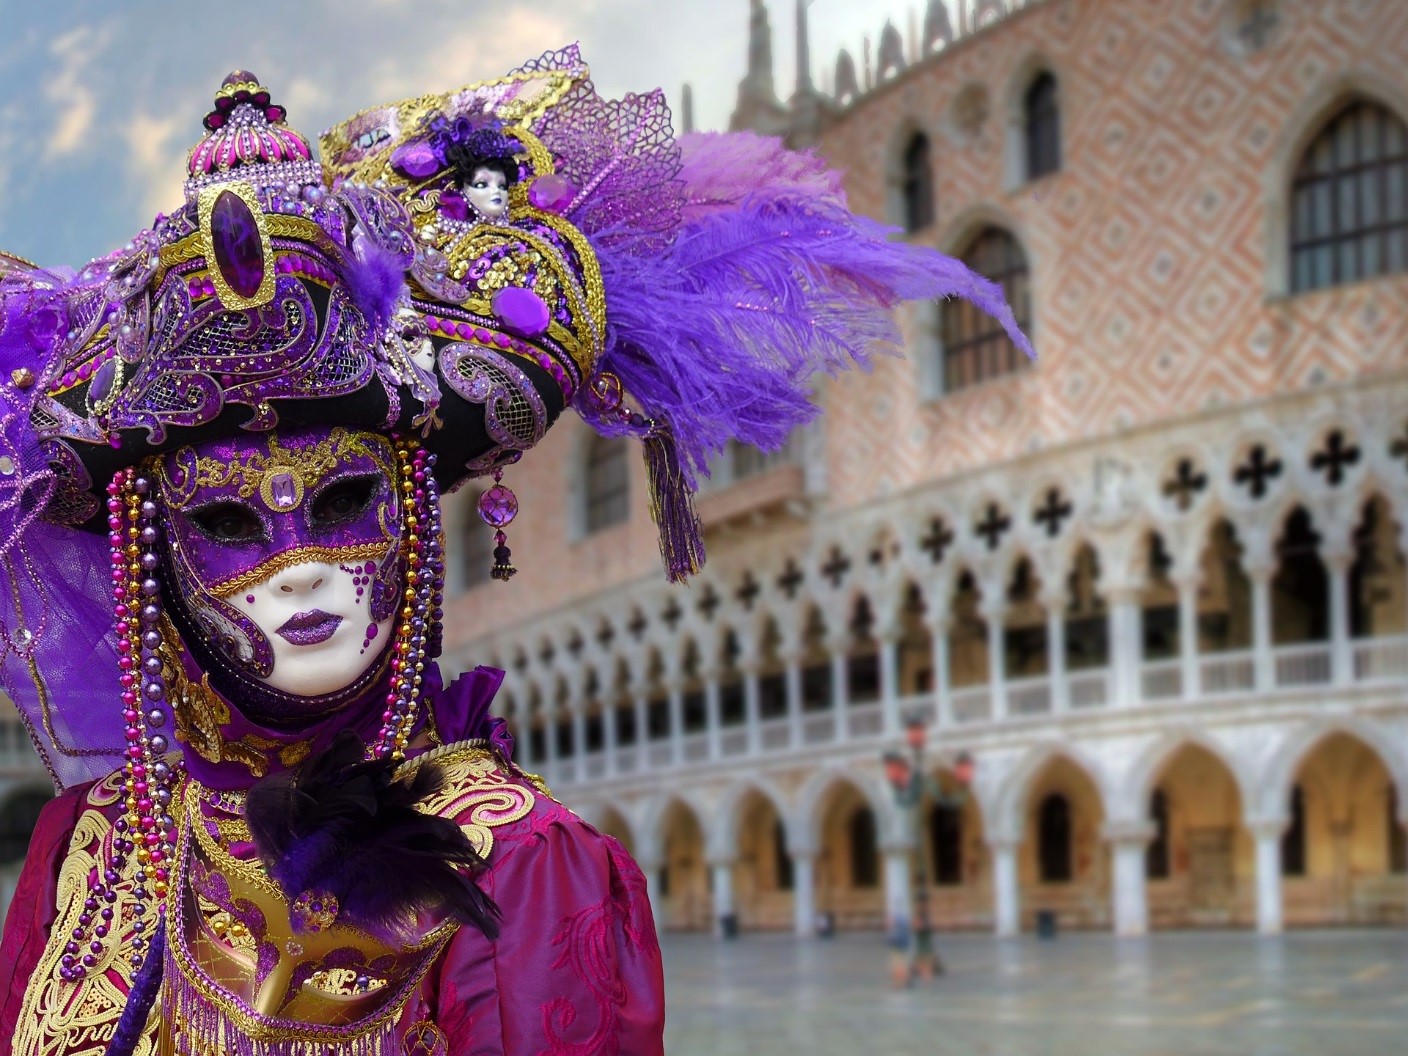 Le maschere artigianali veneziane nella tradizione del Carnevale